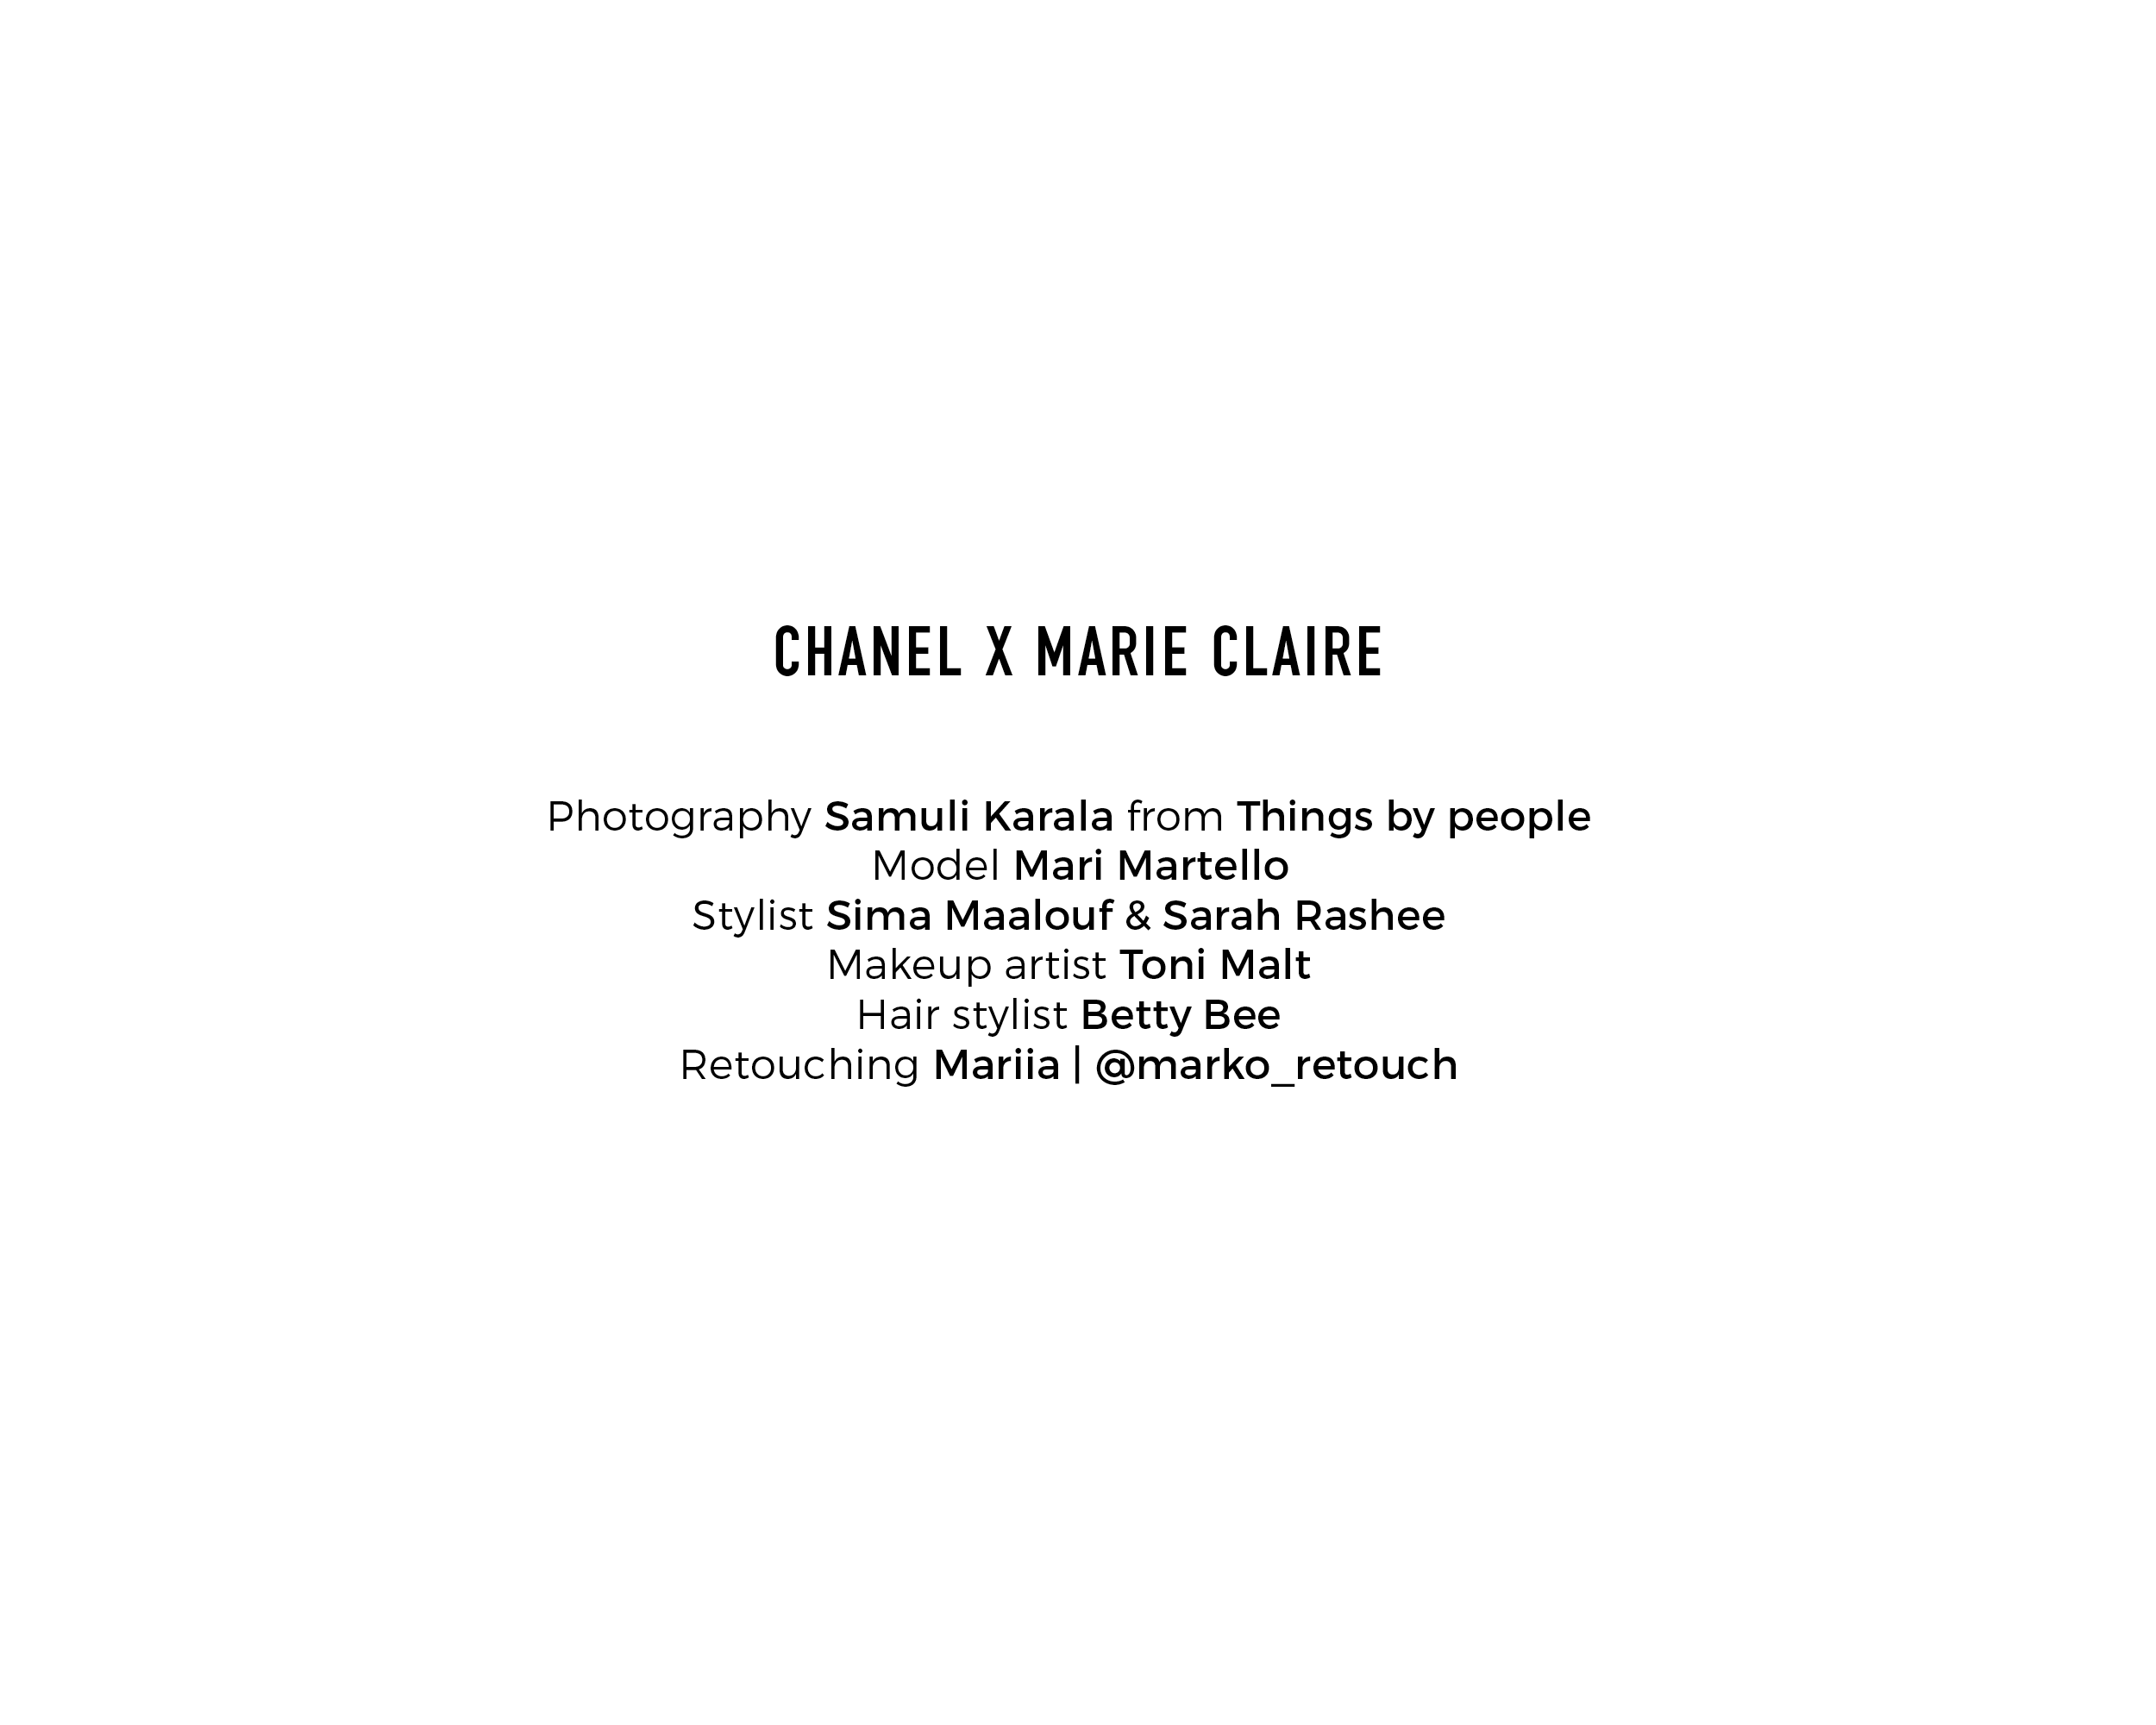 Credits-ChanelXMC-MariMartello